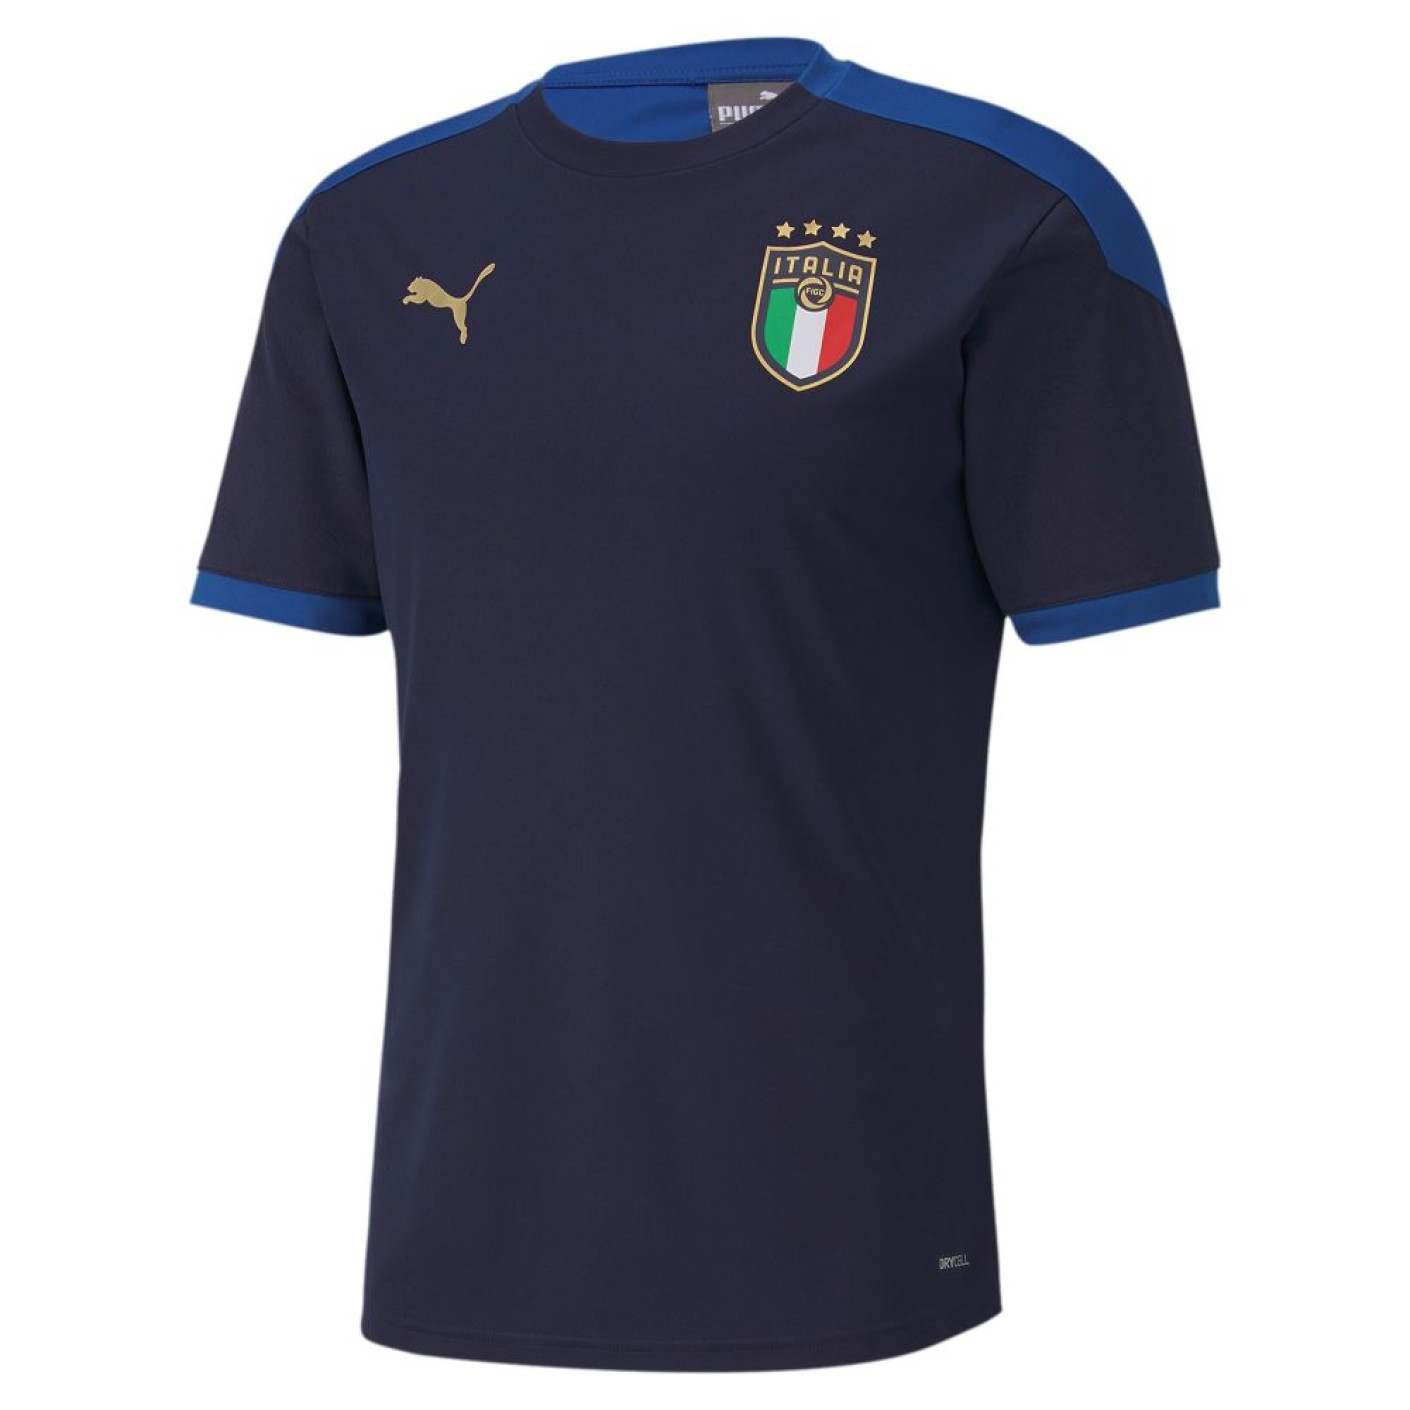 PUMA Italie Trainingsshirt 2020 Donkerblauw